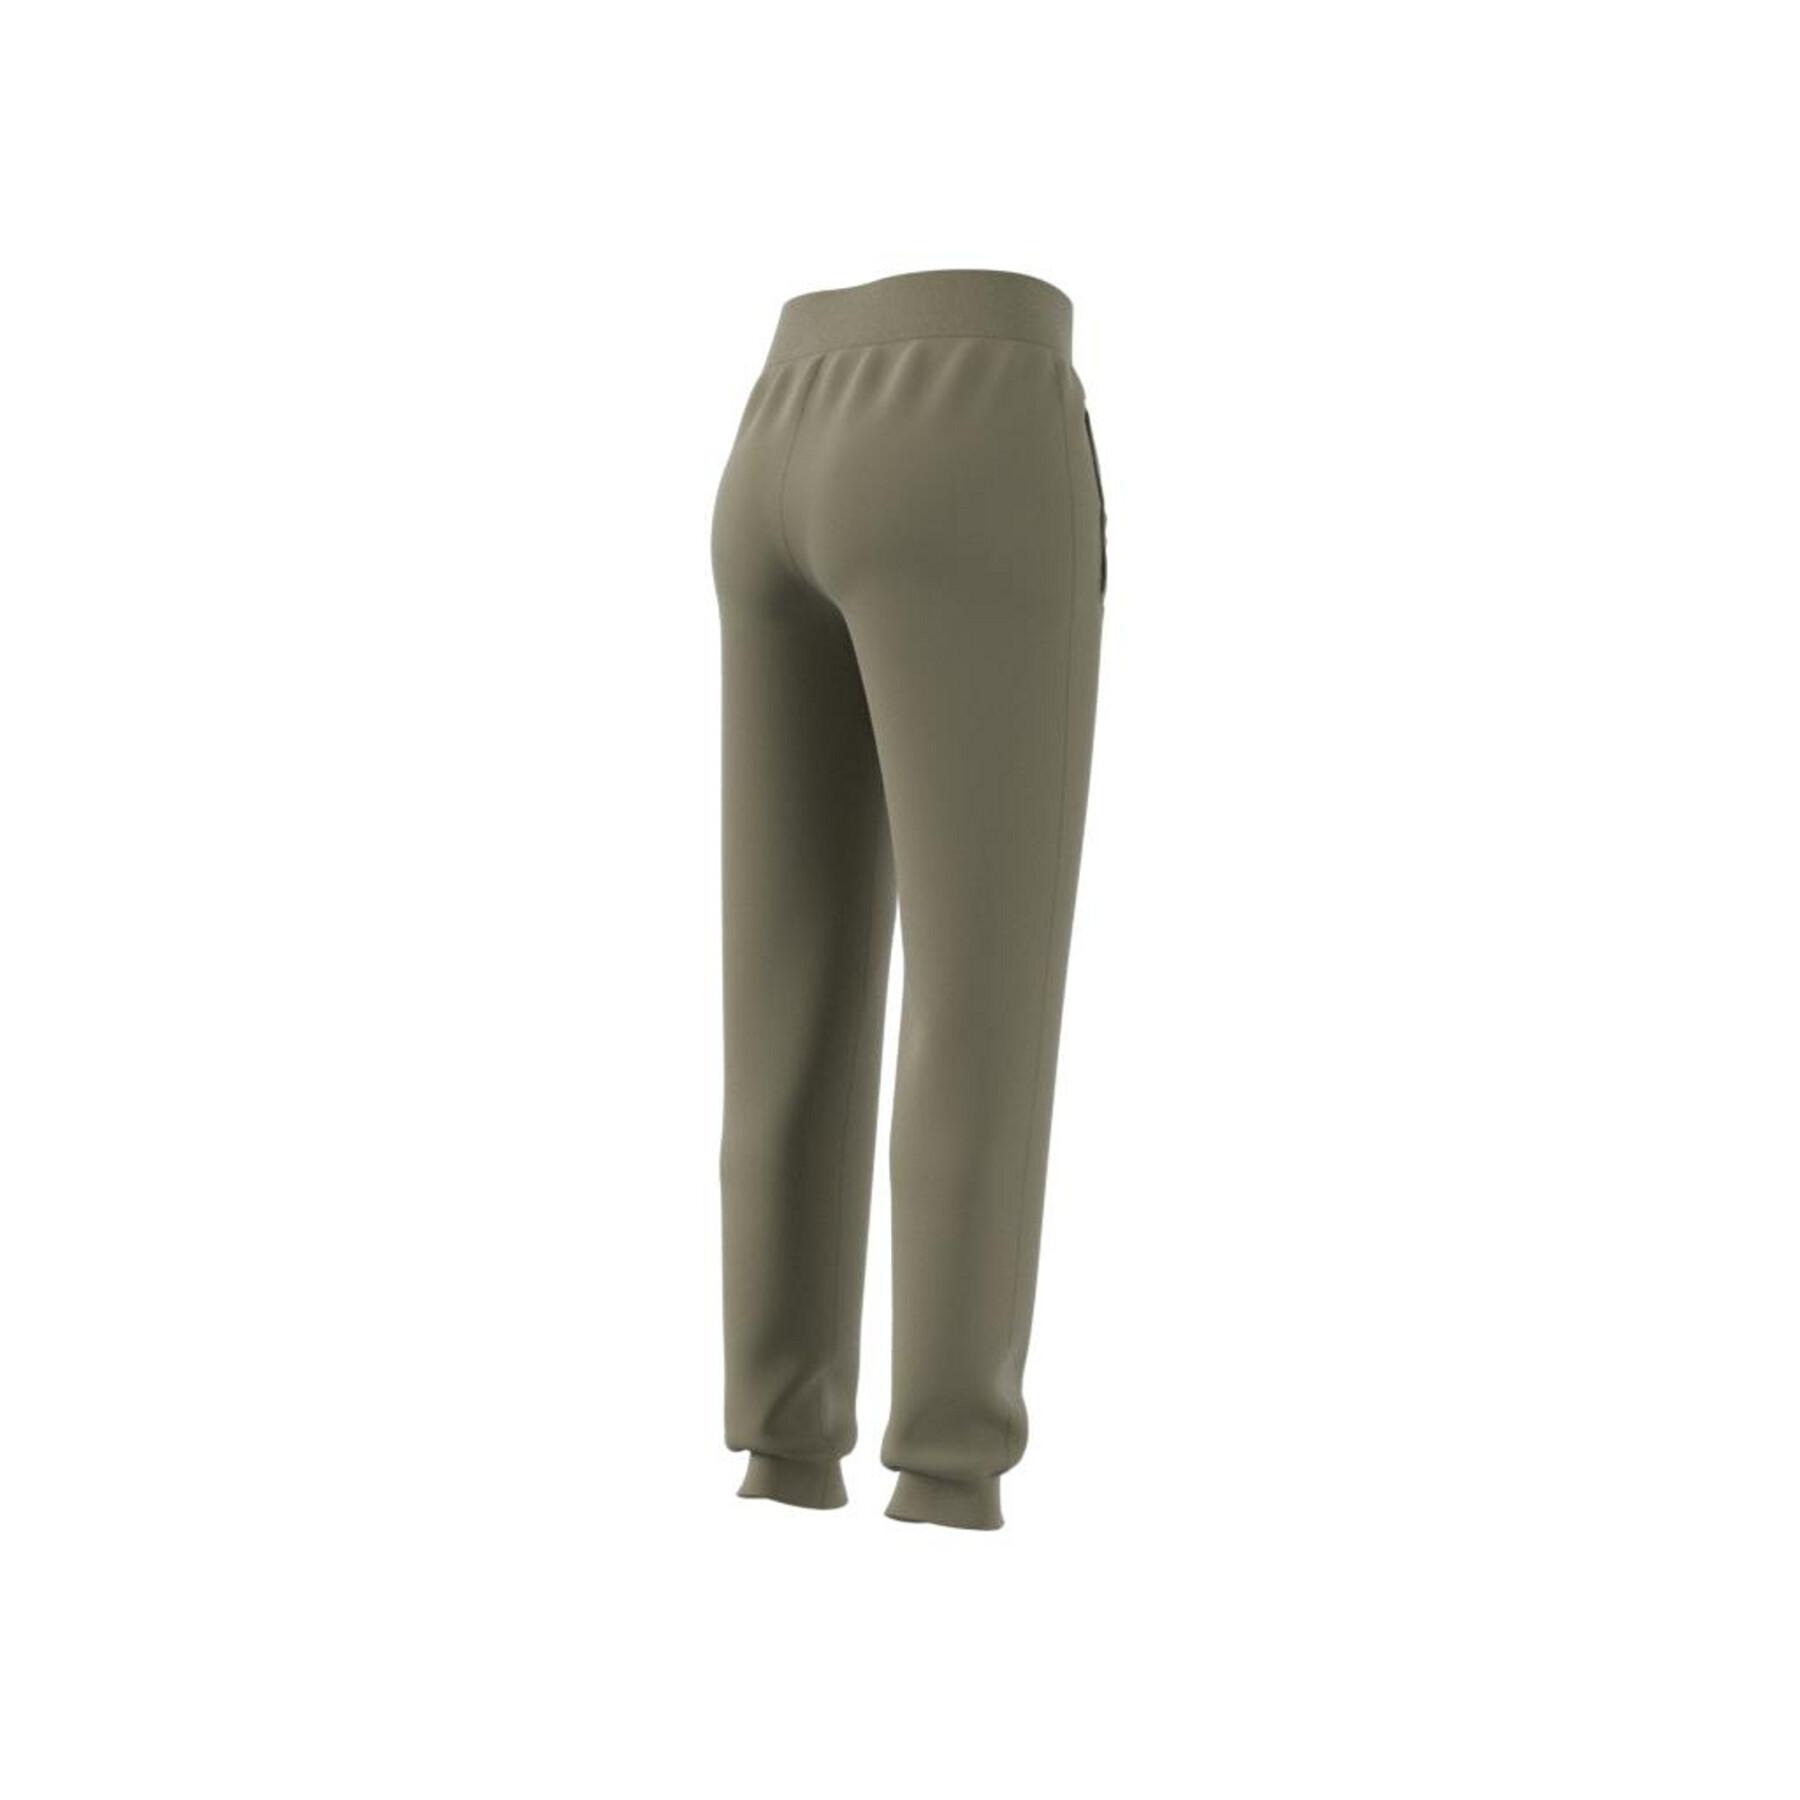 Damen-Sweatpants adidas Originals Adicolor Essentials